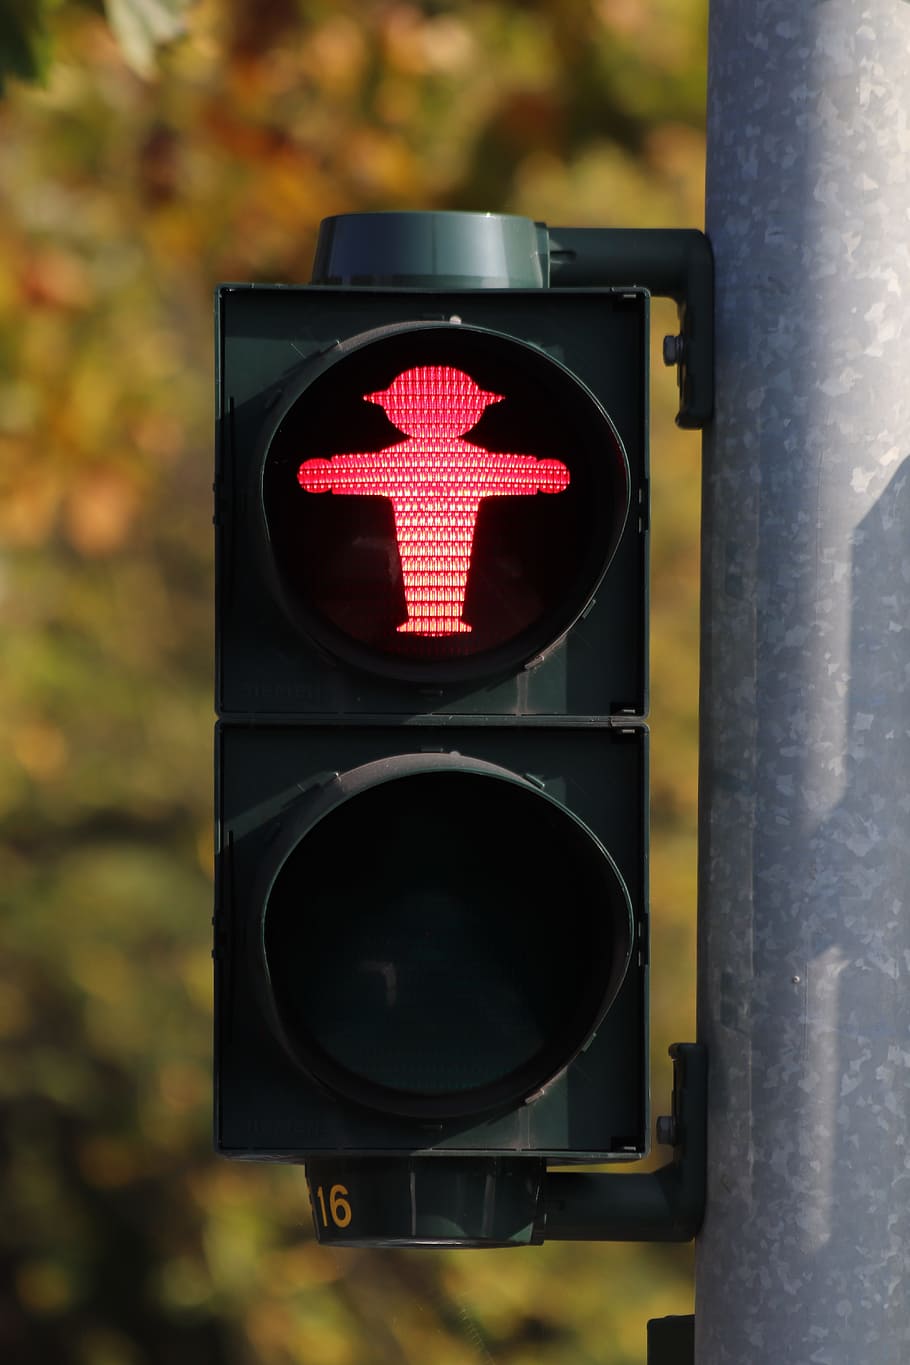 hombrecito verde, semáforos, que contiene, rojo, paso de peatones, señal de tráfico, cruz, señal luminosa, berlín, alemania